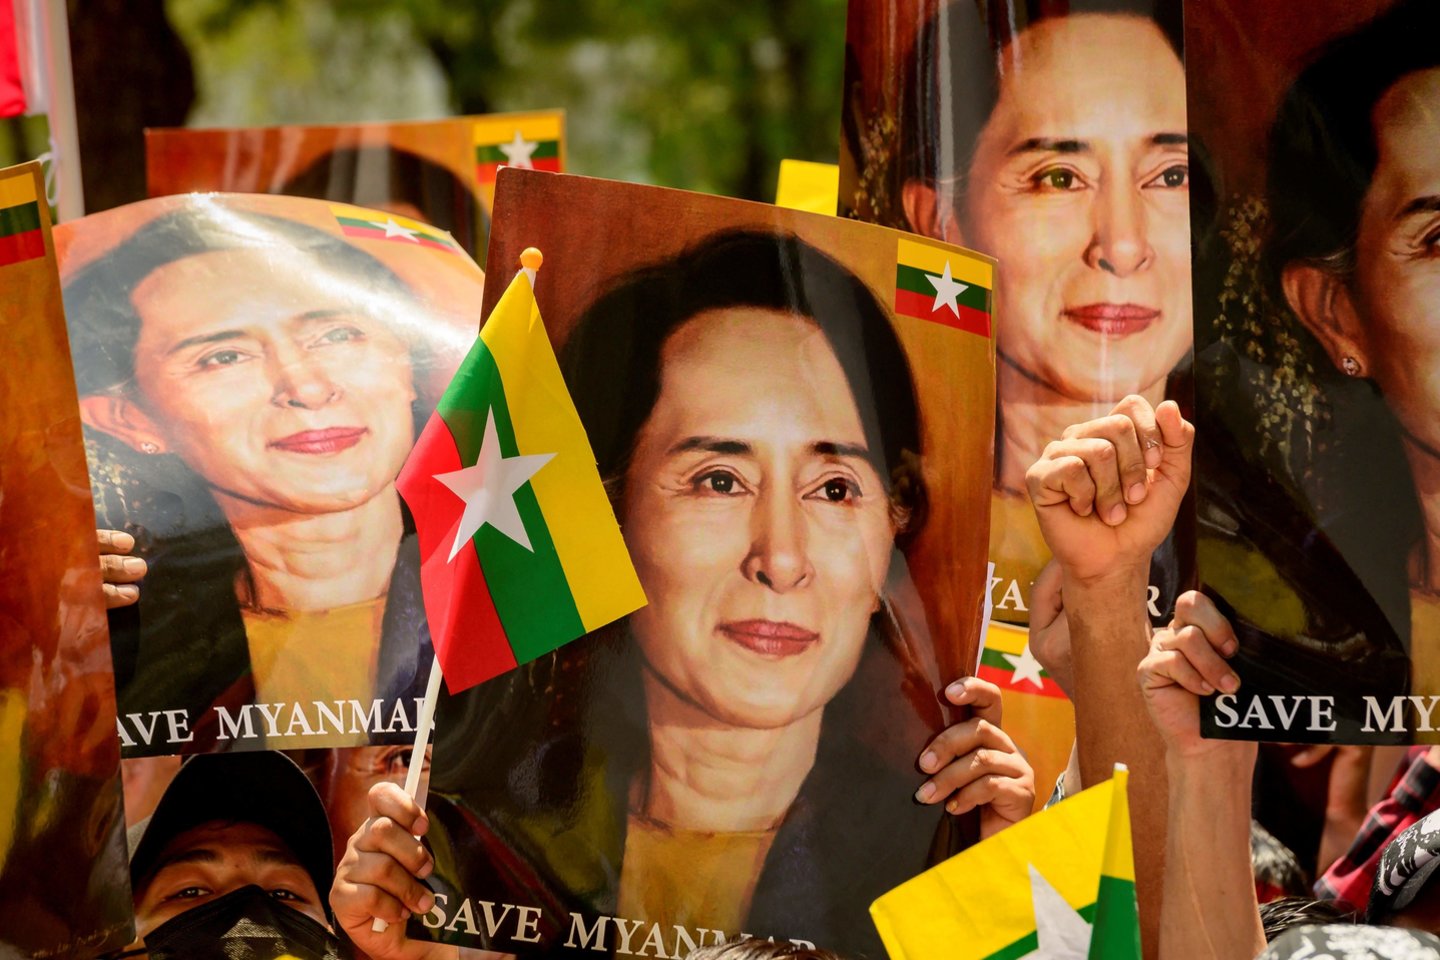  Jungtinės Tautos antradienį viešai pasmerkė didėjantį žuvusiųjų skaičių po vasario 1 dienos karinio perversmo Mianmare ir perspėjo, kad sulaikyti protestuotojai patiria kankinimų, o dar šimtai žmonių yra dingę.  <br>AFP/Scanpix nuotr.